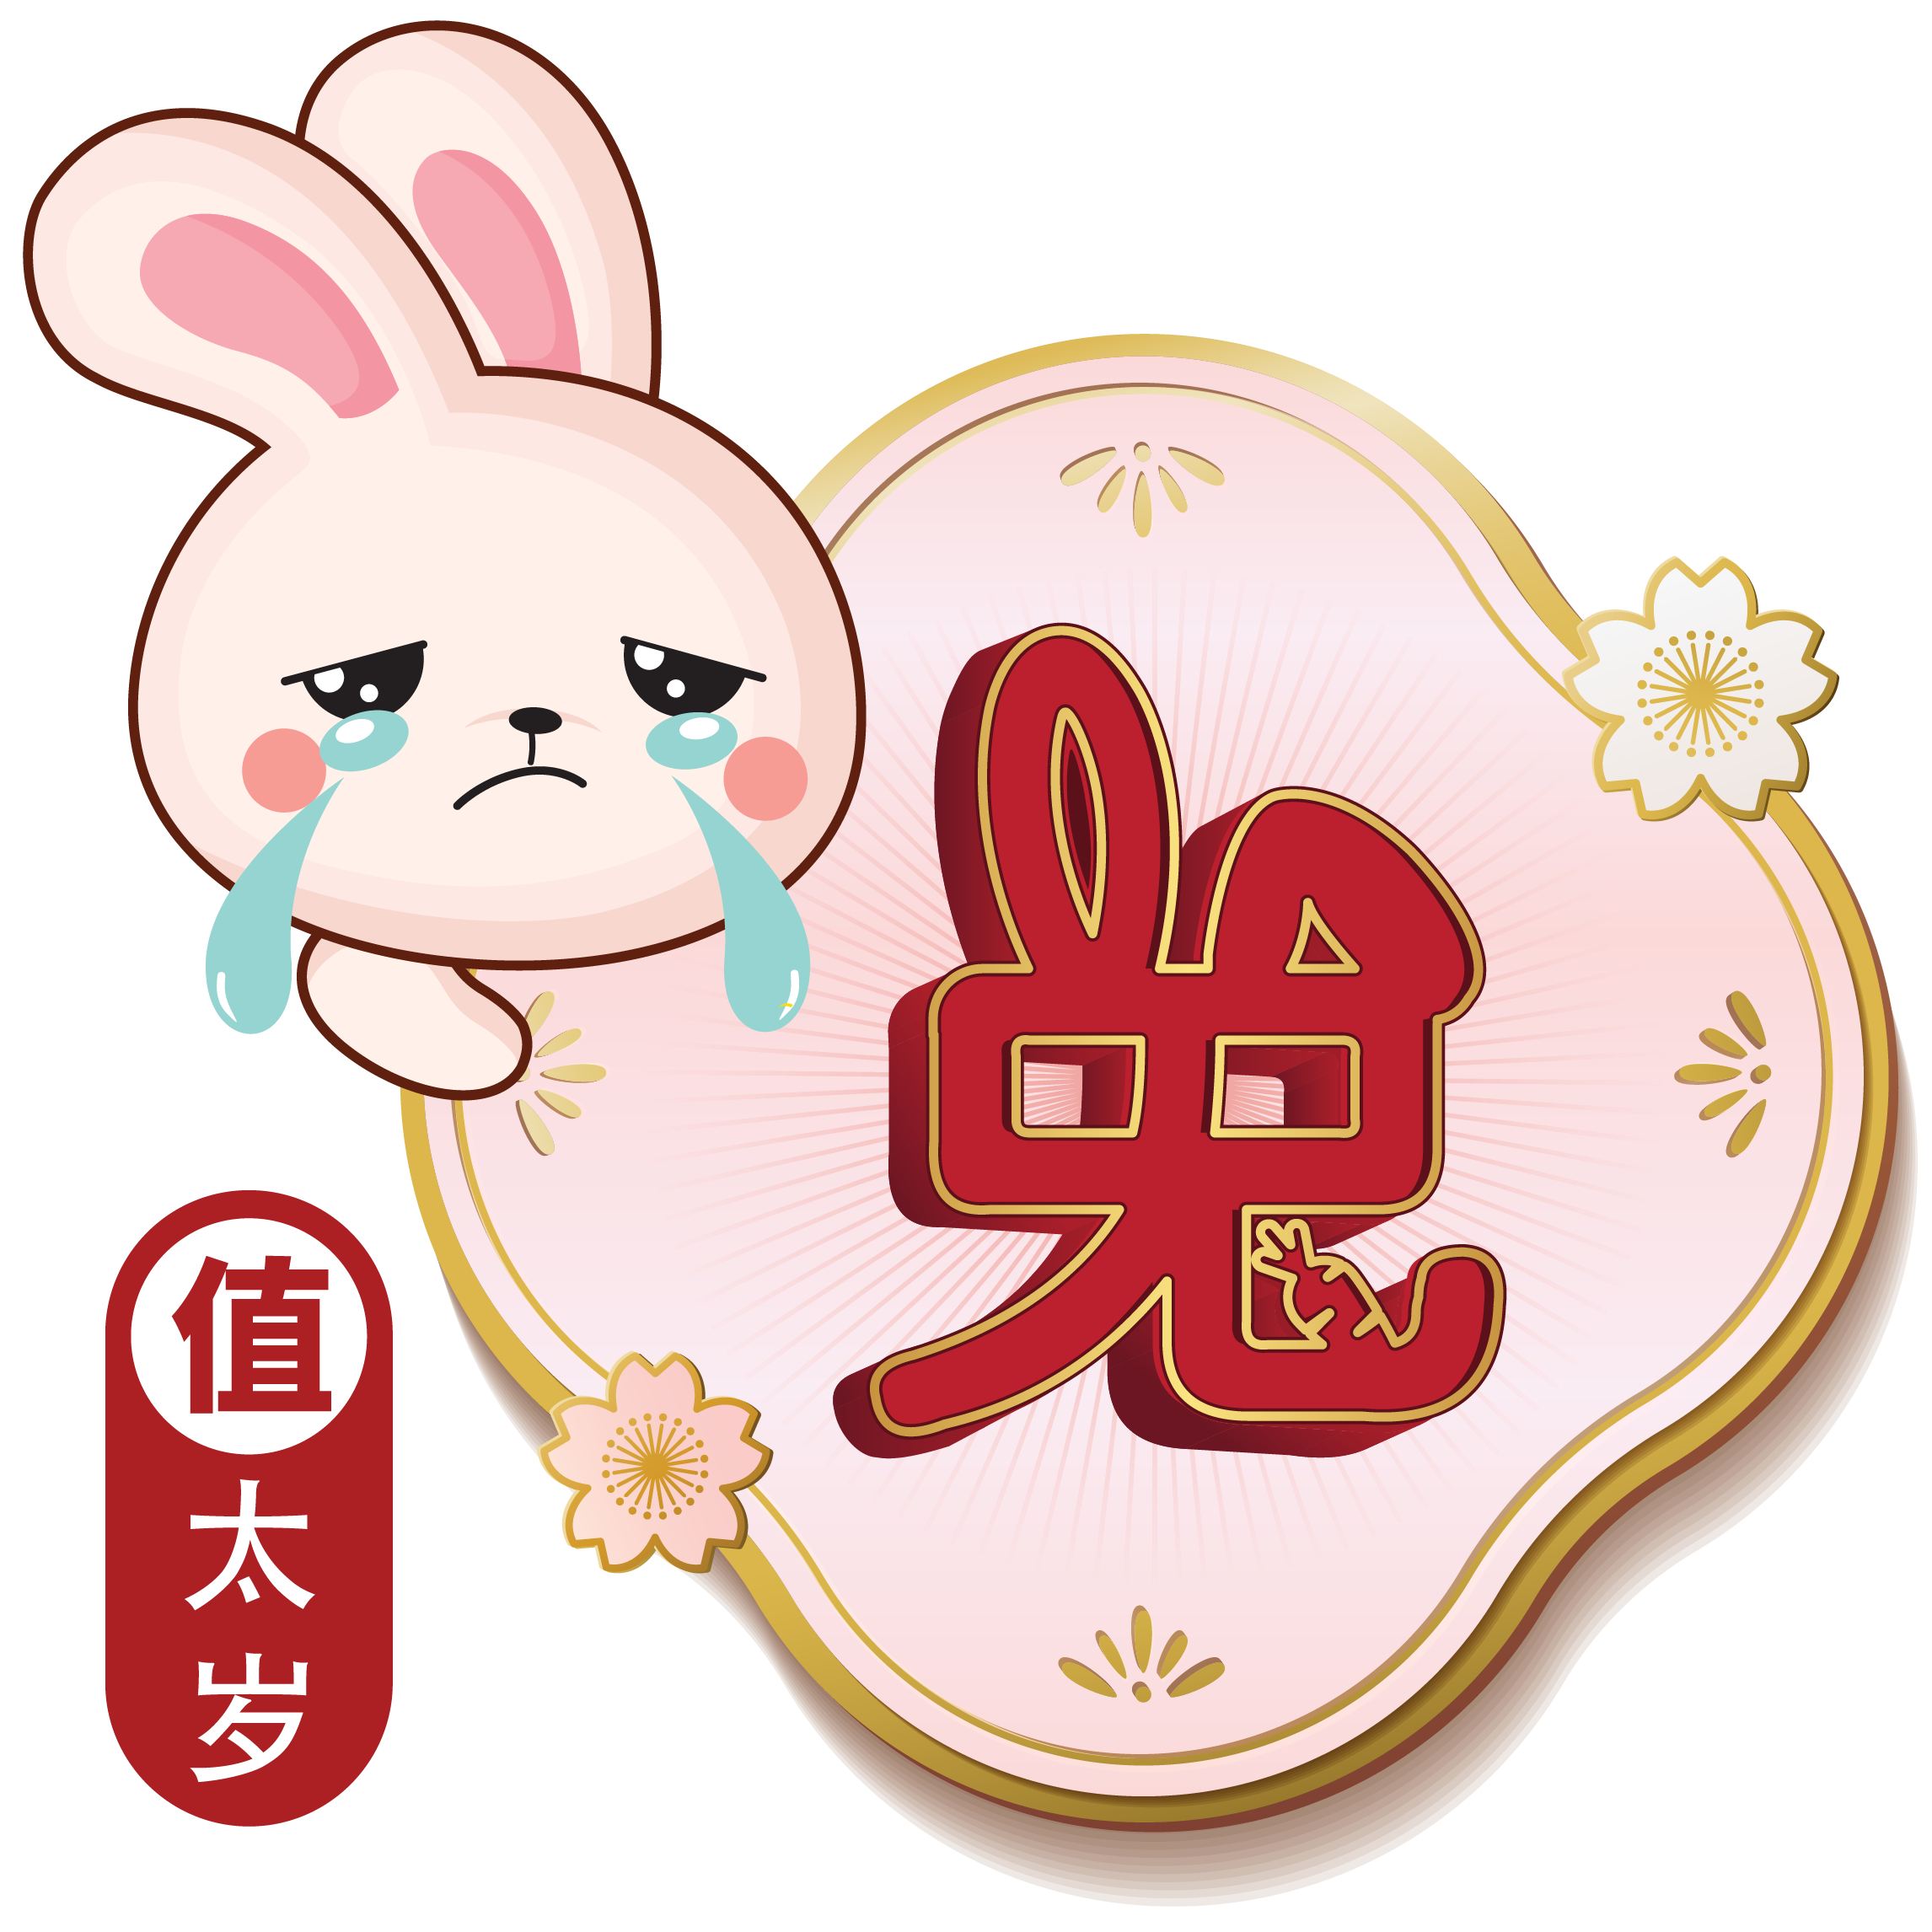 2023 Rabbit Zodiac Forecast Yuan Zhong Siu